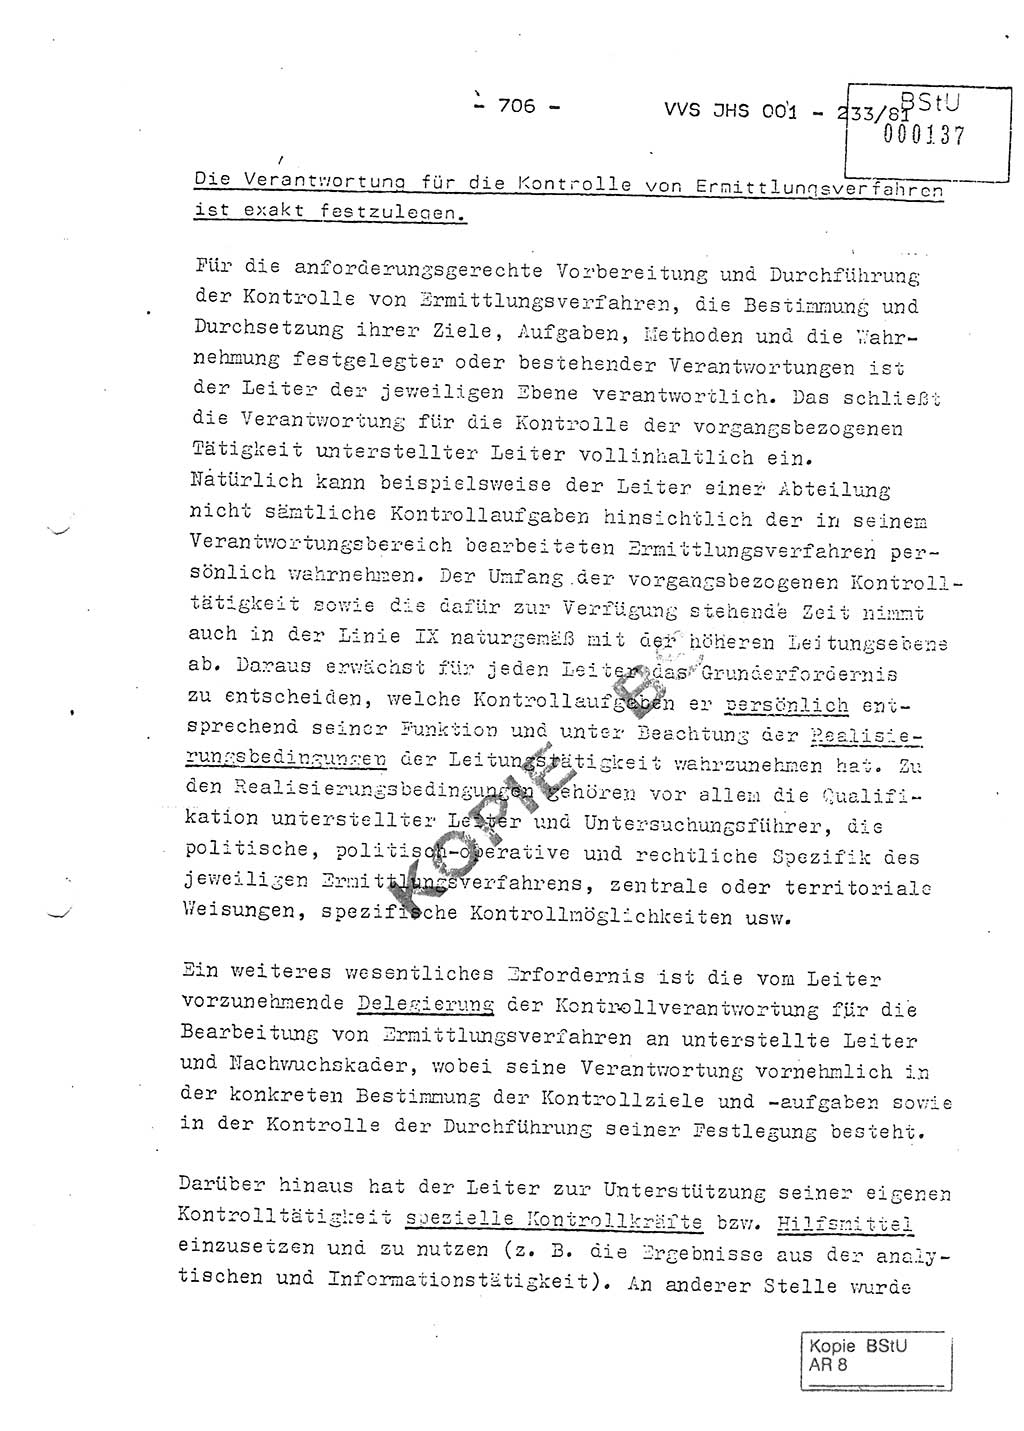 Dissertation Oberstleutnant Horst Zank (JHS), Oberstleutnant Dr. Karl-Heinz Knoblauch (JHS), Oberstleutnant Gustav-Adolf Kowalewski (HA Ⅸ), Oberstleutnant Wolfgang Plötner (HA Ⅸ), Ministerium für Staatssicherheit (MfS) [Deutsche Demokratische Republik (DDR)], Juristische Hochschule (JHS), Vertrauliche Verschlußsache (VVS) o001-233/81, Potsdam 1981, Blatt 706 (Diss. MfS DDR JHS VVS o001-233/81 1981, Bl. 706)